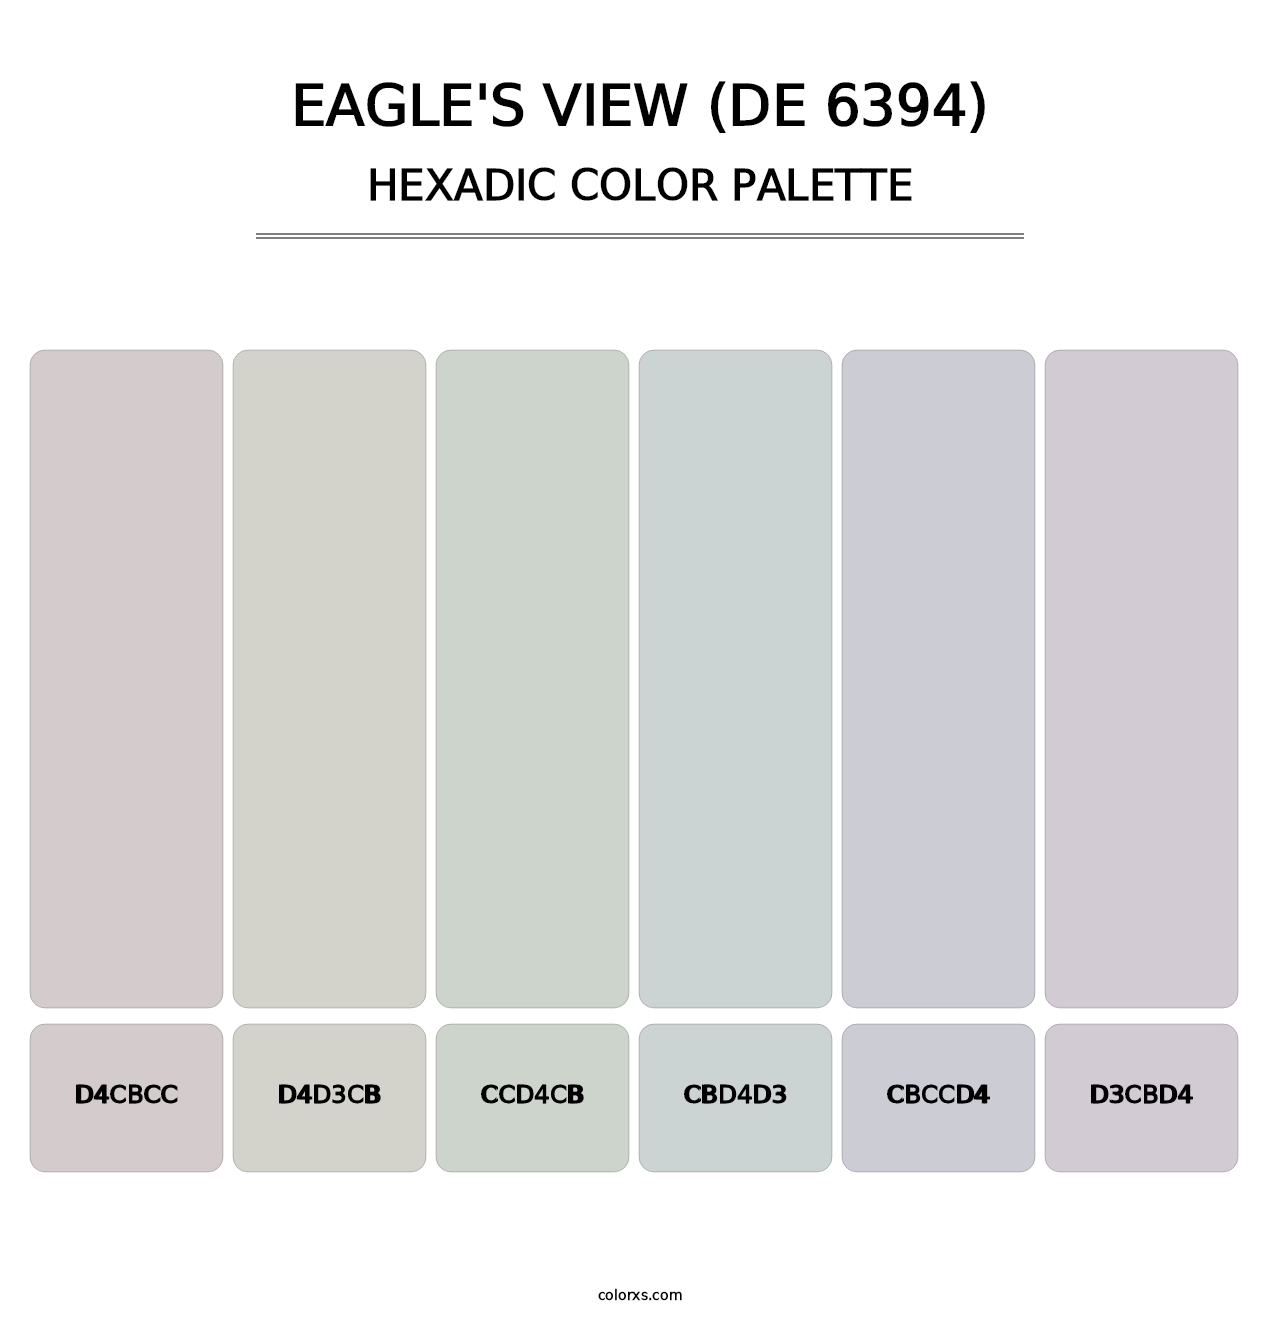 Eagle's View (DE 6394) - Hexadic Color Palette